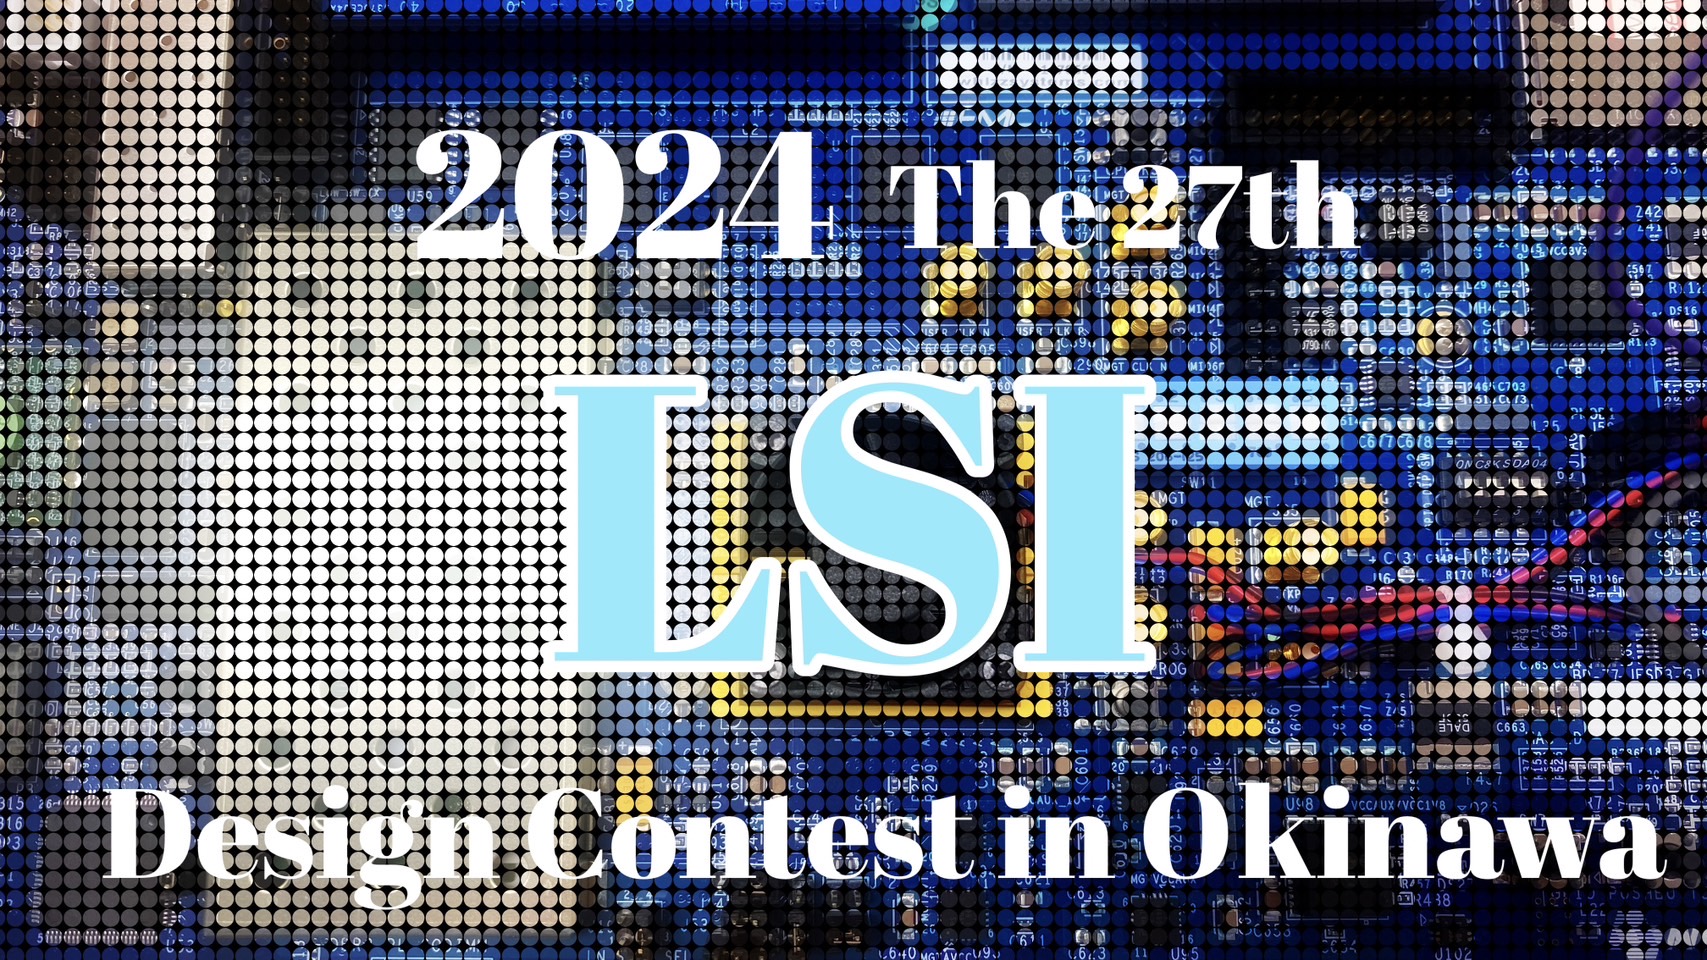 LSI design contest 2024